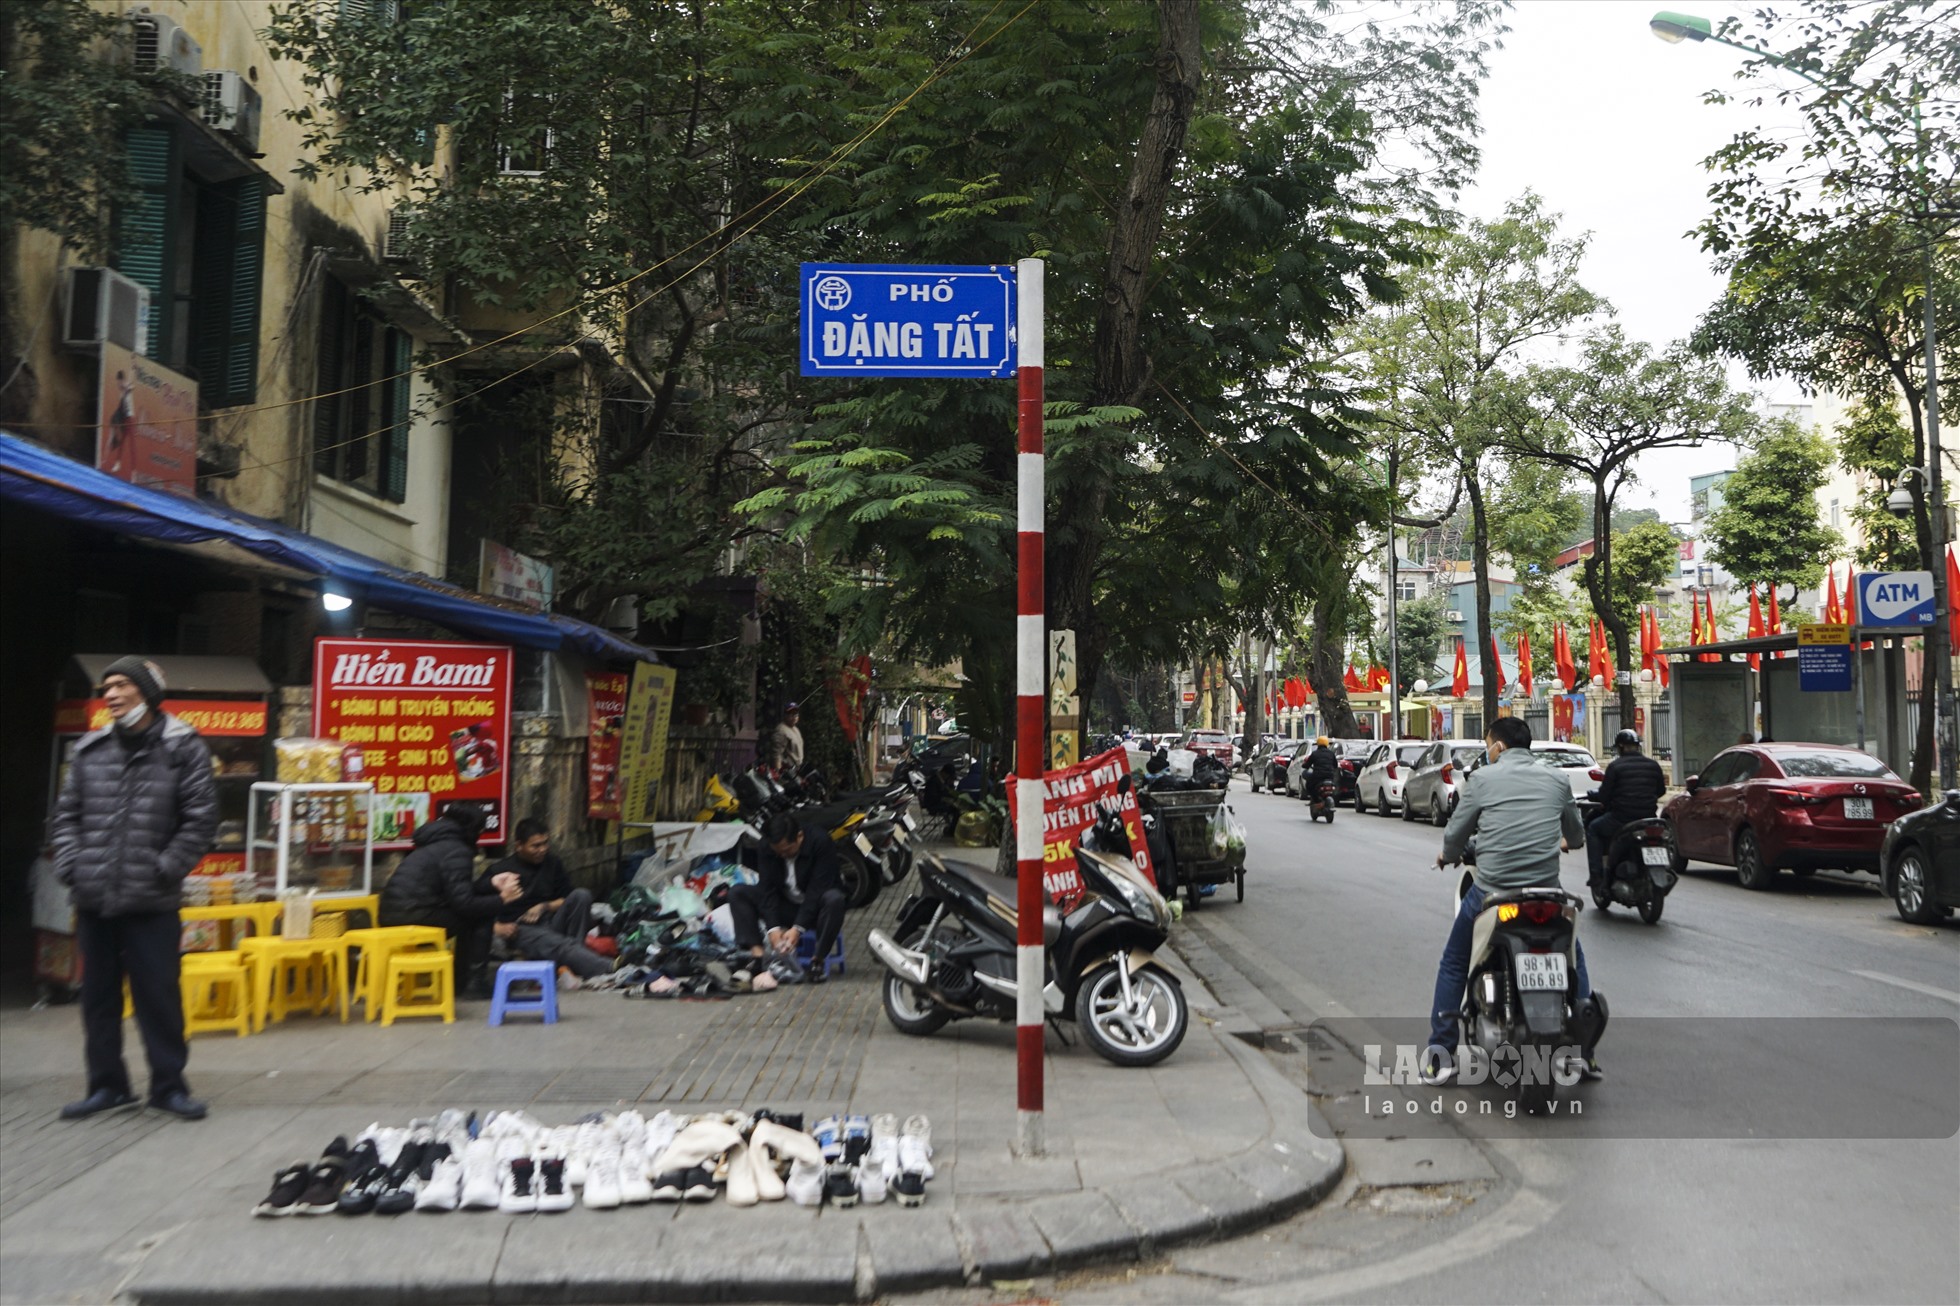 Tương tự tại phố Đặng Tất, các điểm tân trang giày dép khách đặt hàng cũng tăng đột biến.